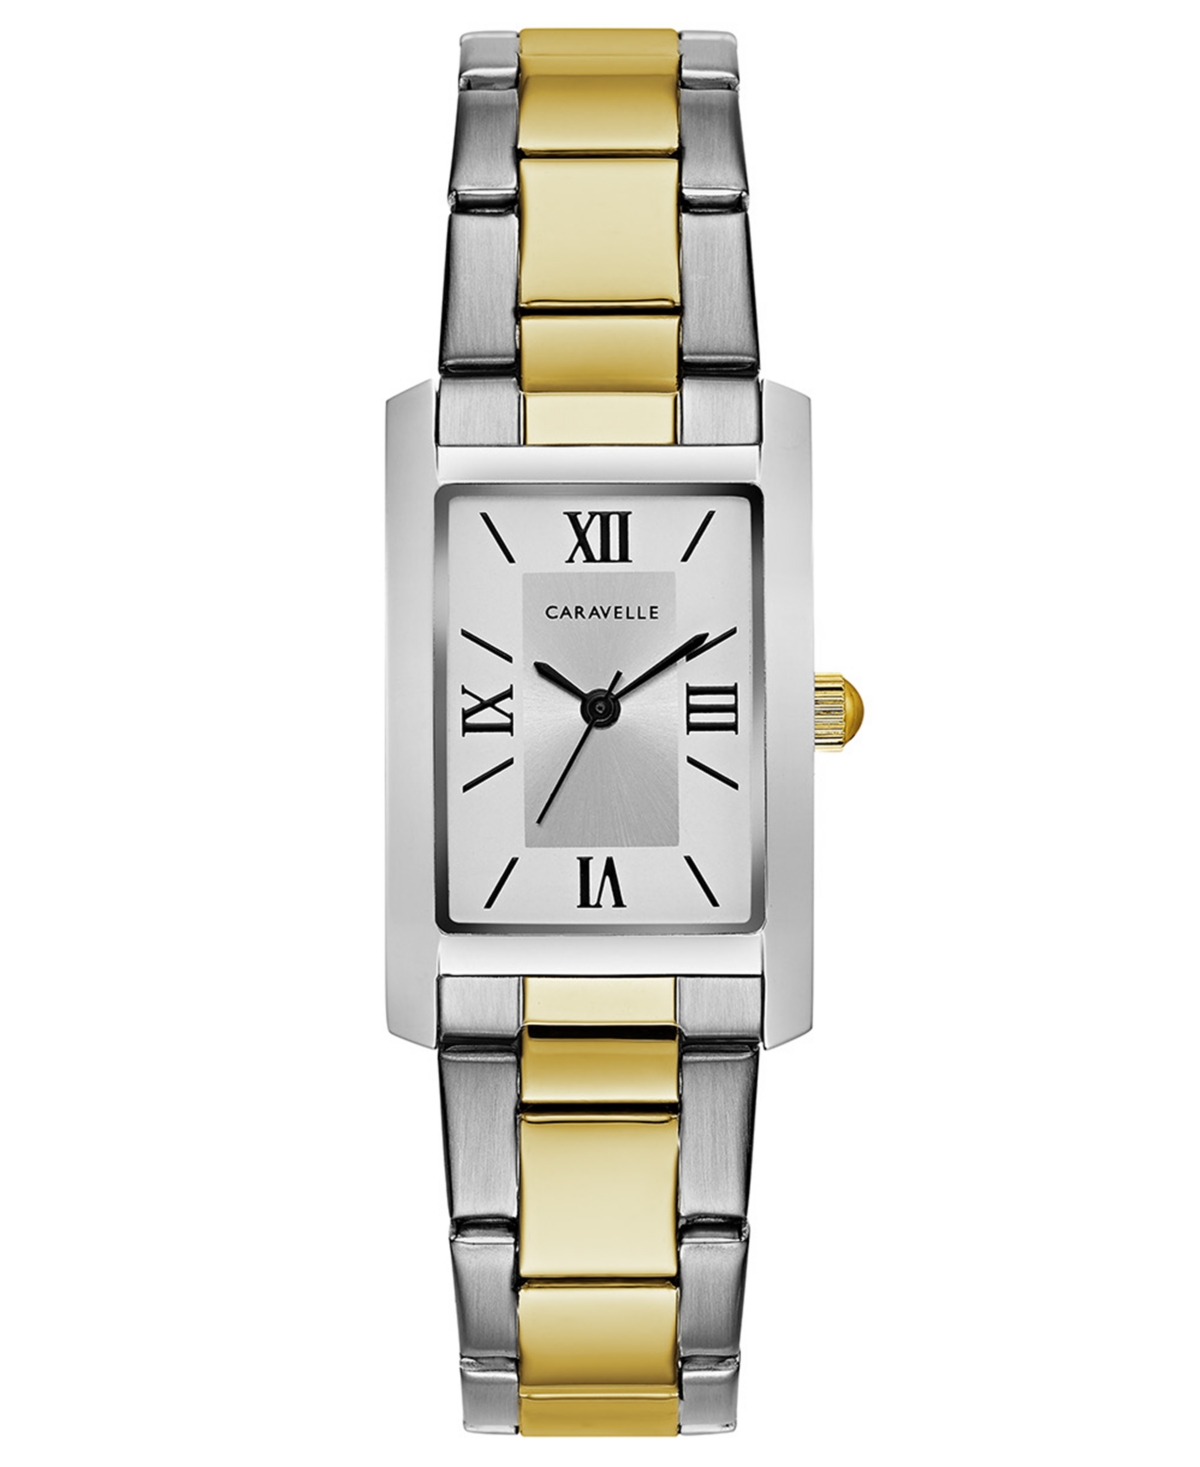 Designed by Bulova Women's Two-Tone Stainless Steel Bracelet Watch 21x33mm